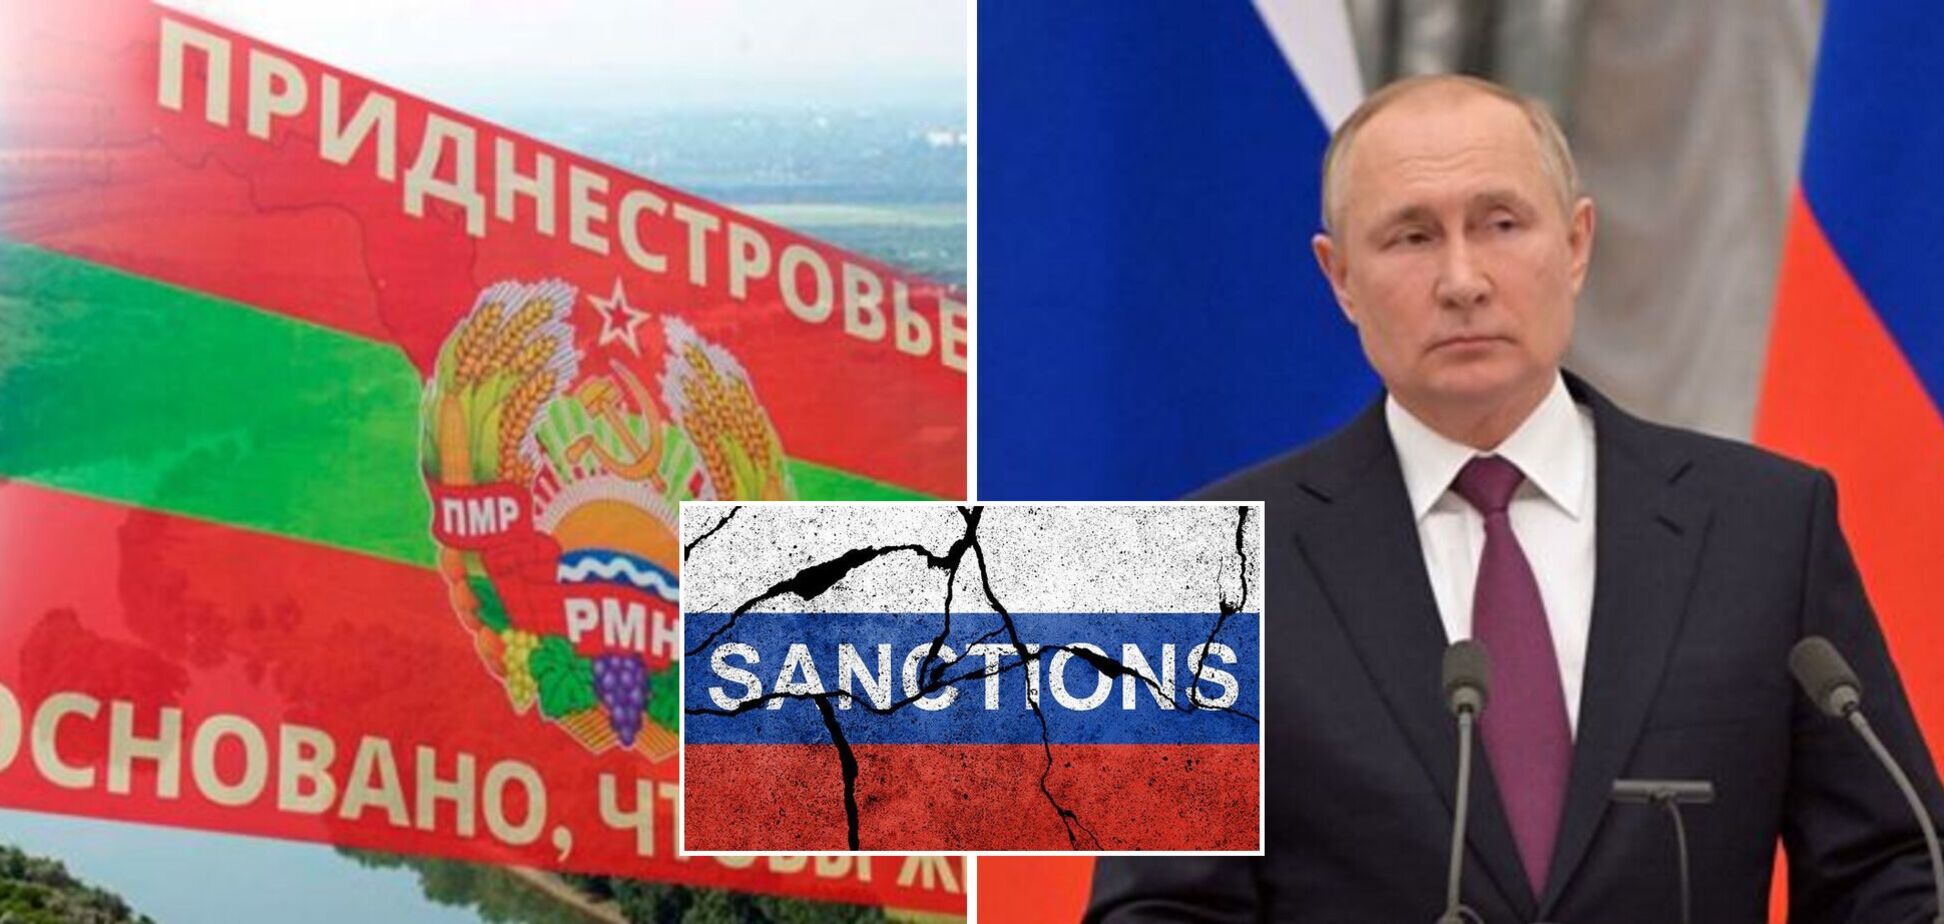 Стальные схемы: как Молдова и Приднестровье позволяют РФ обходить европейские санкции